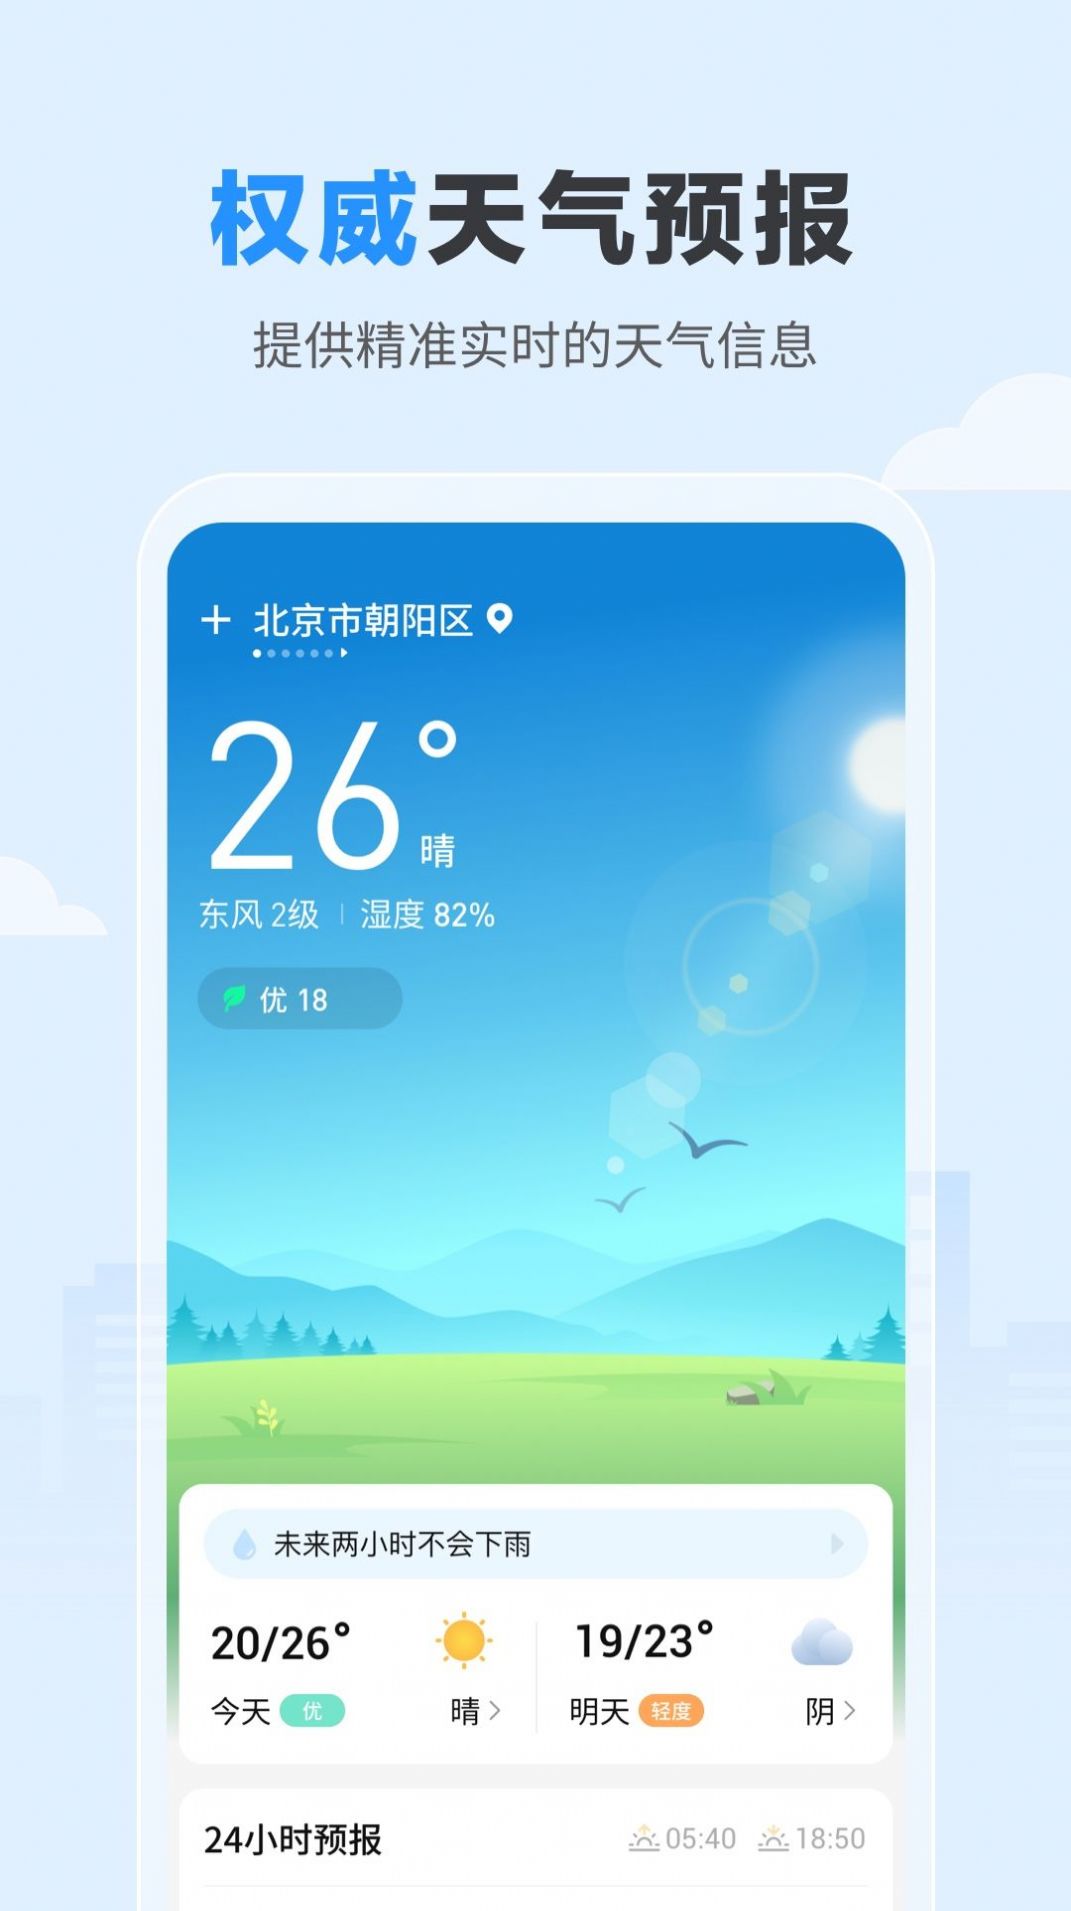 今日天气预报 24小时官方版app图片1